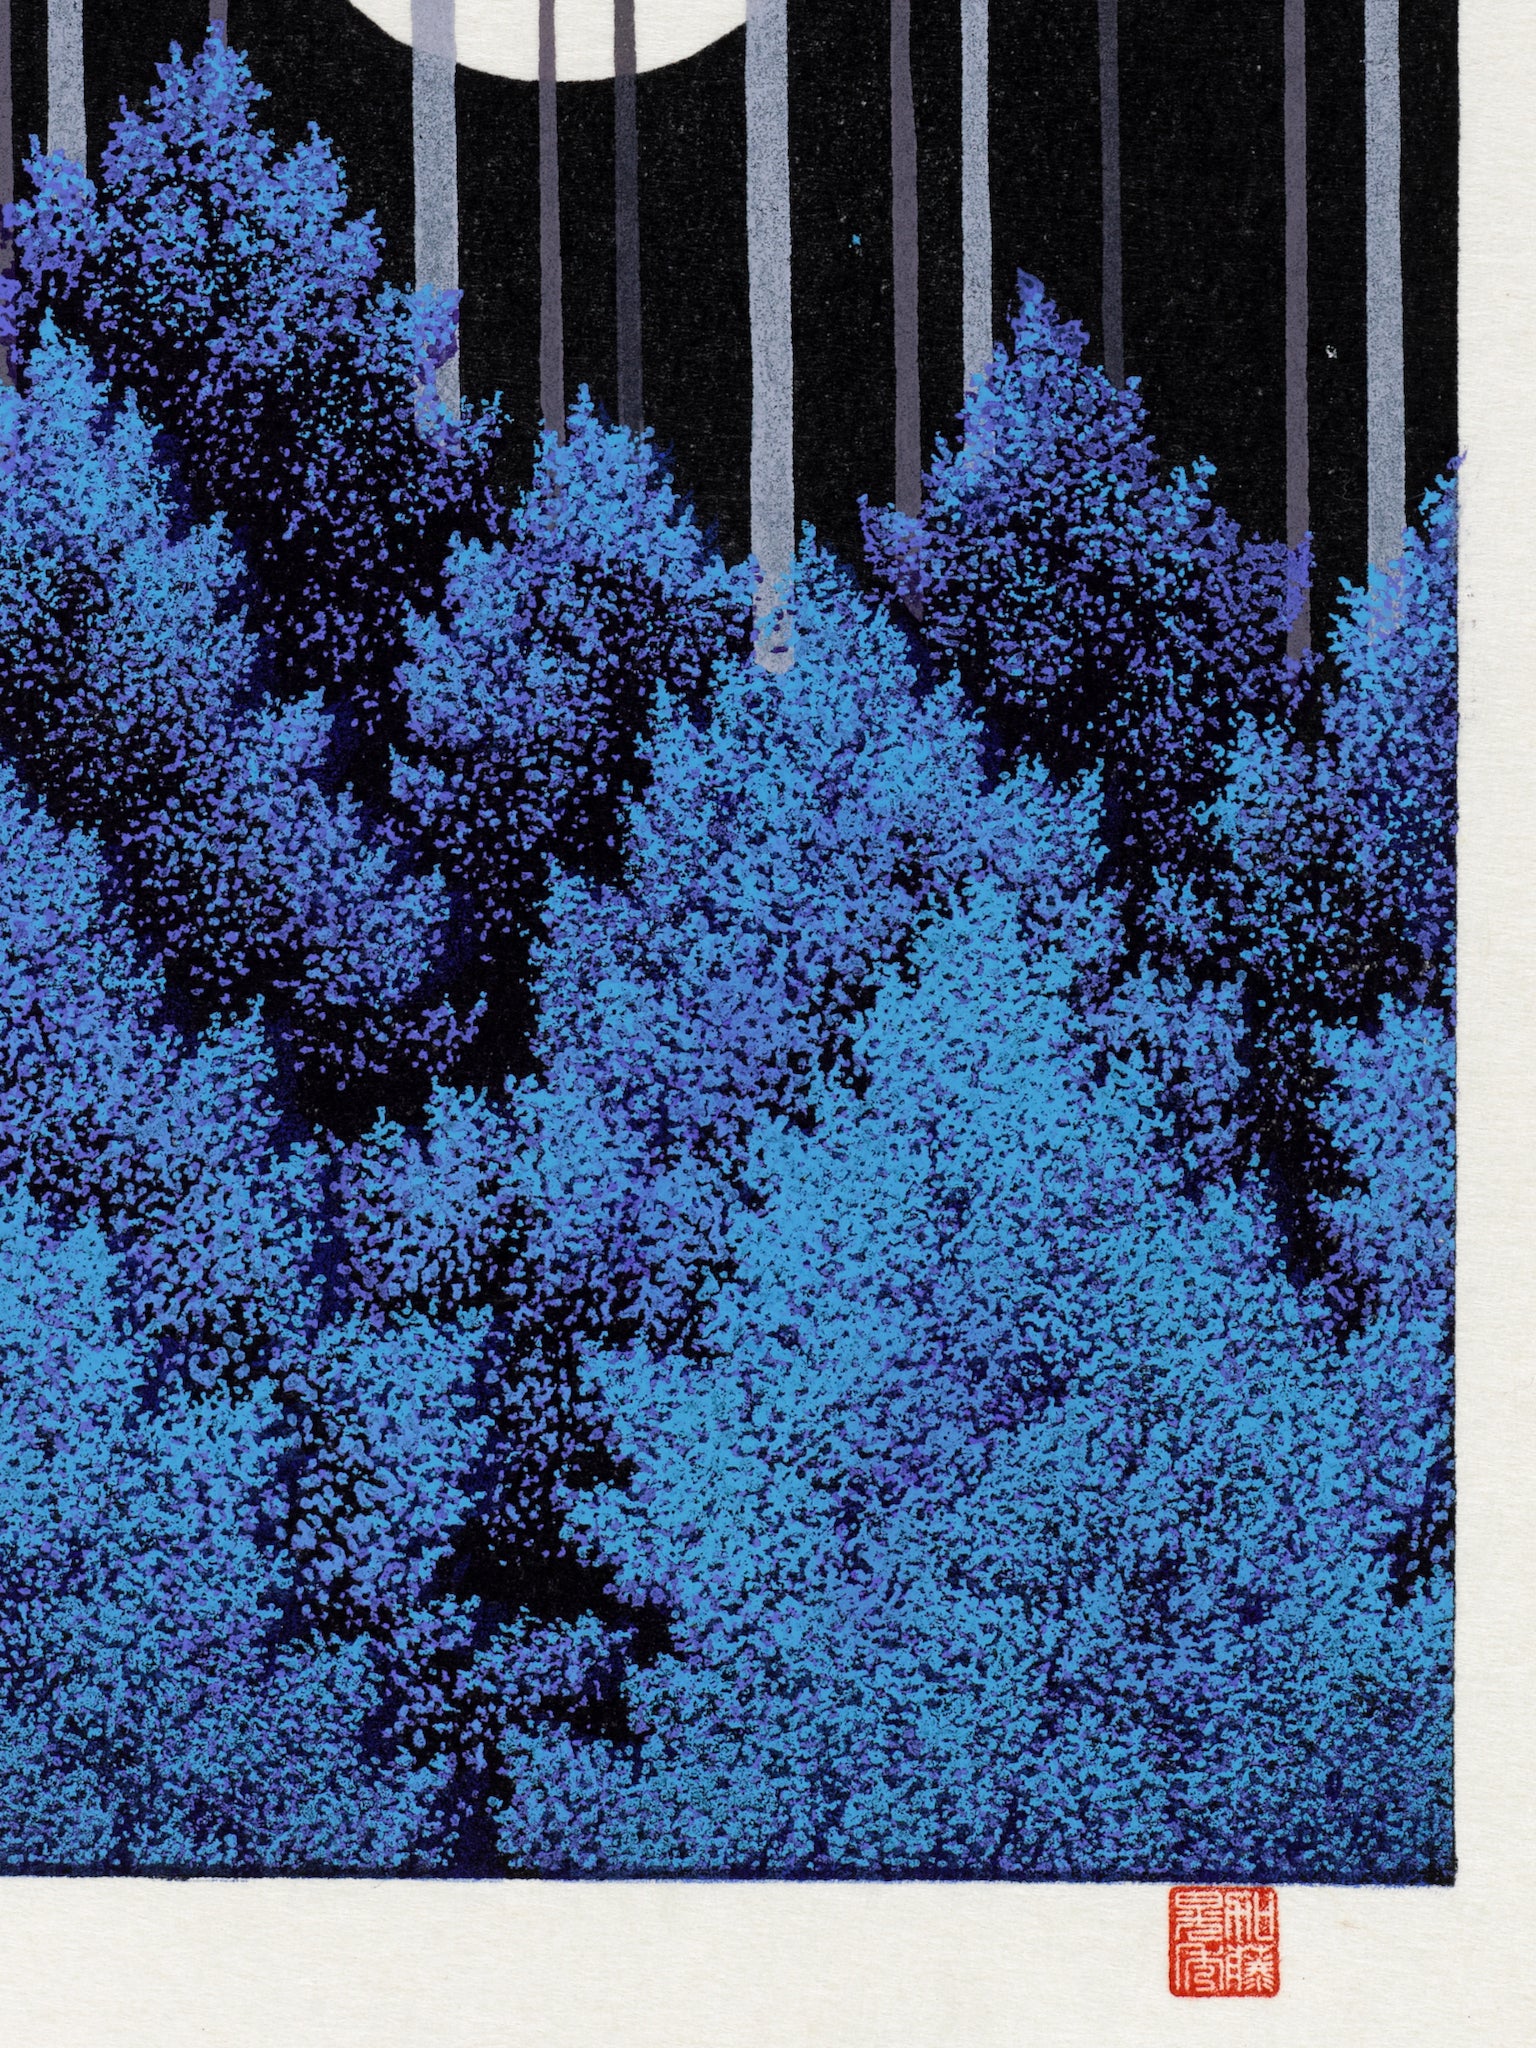 estampe japonaise contemporaine la pleine lune arbres bleus au dessus et au dessous, les arbres bleus